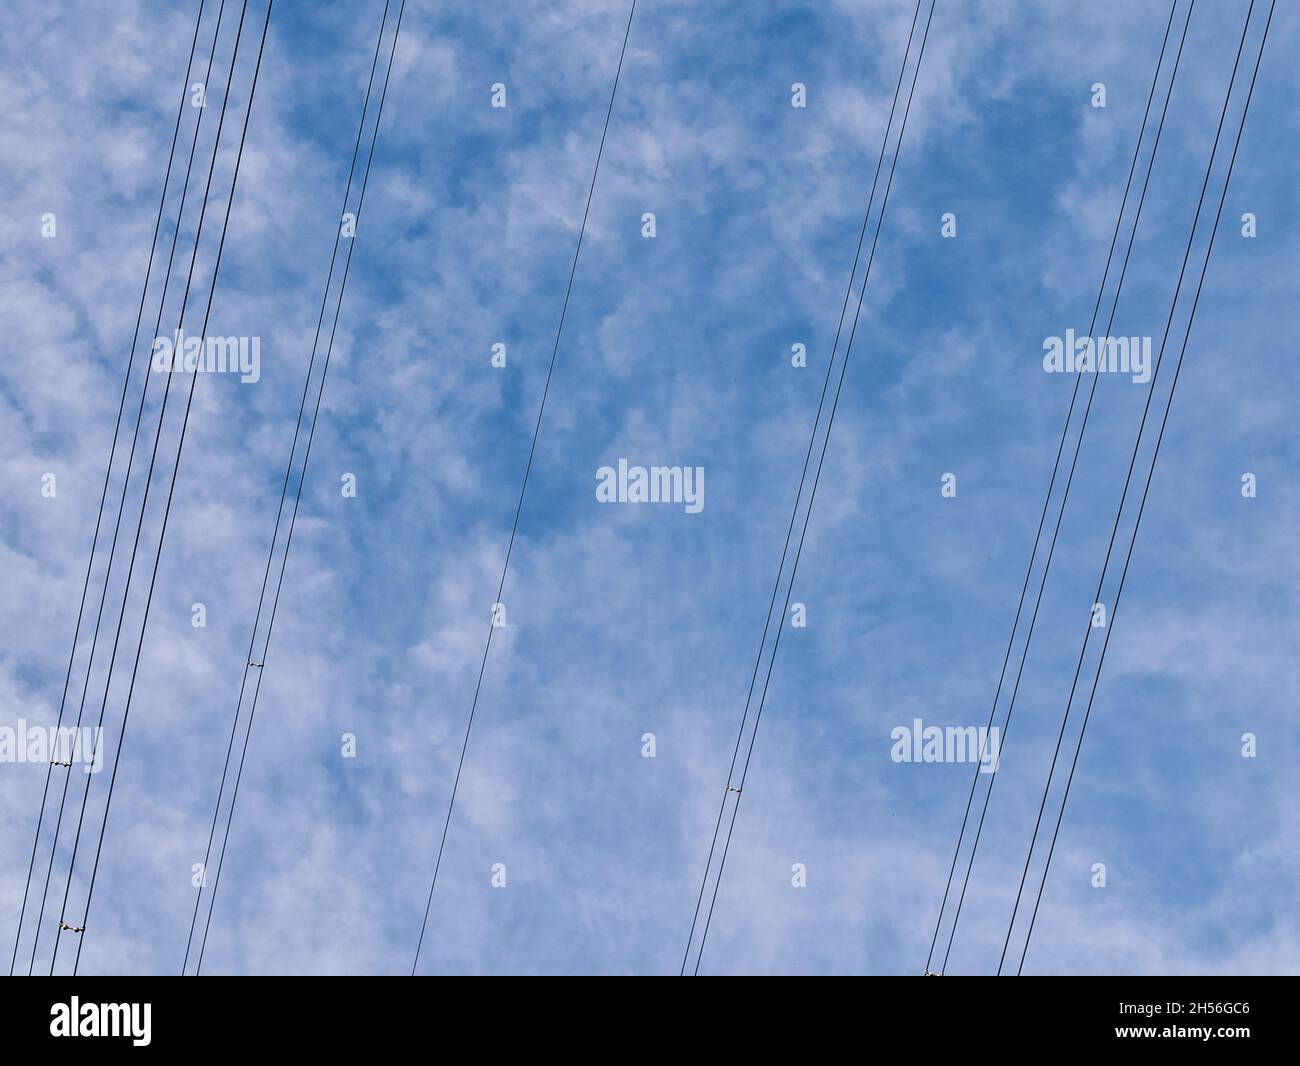 Cavi di trasmissione dell'elettricità ad alta tensione sospesi - parte della rete nazionale del Regno Unito - contro un cielo blu con nuvole bianche. Foto Stock